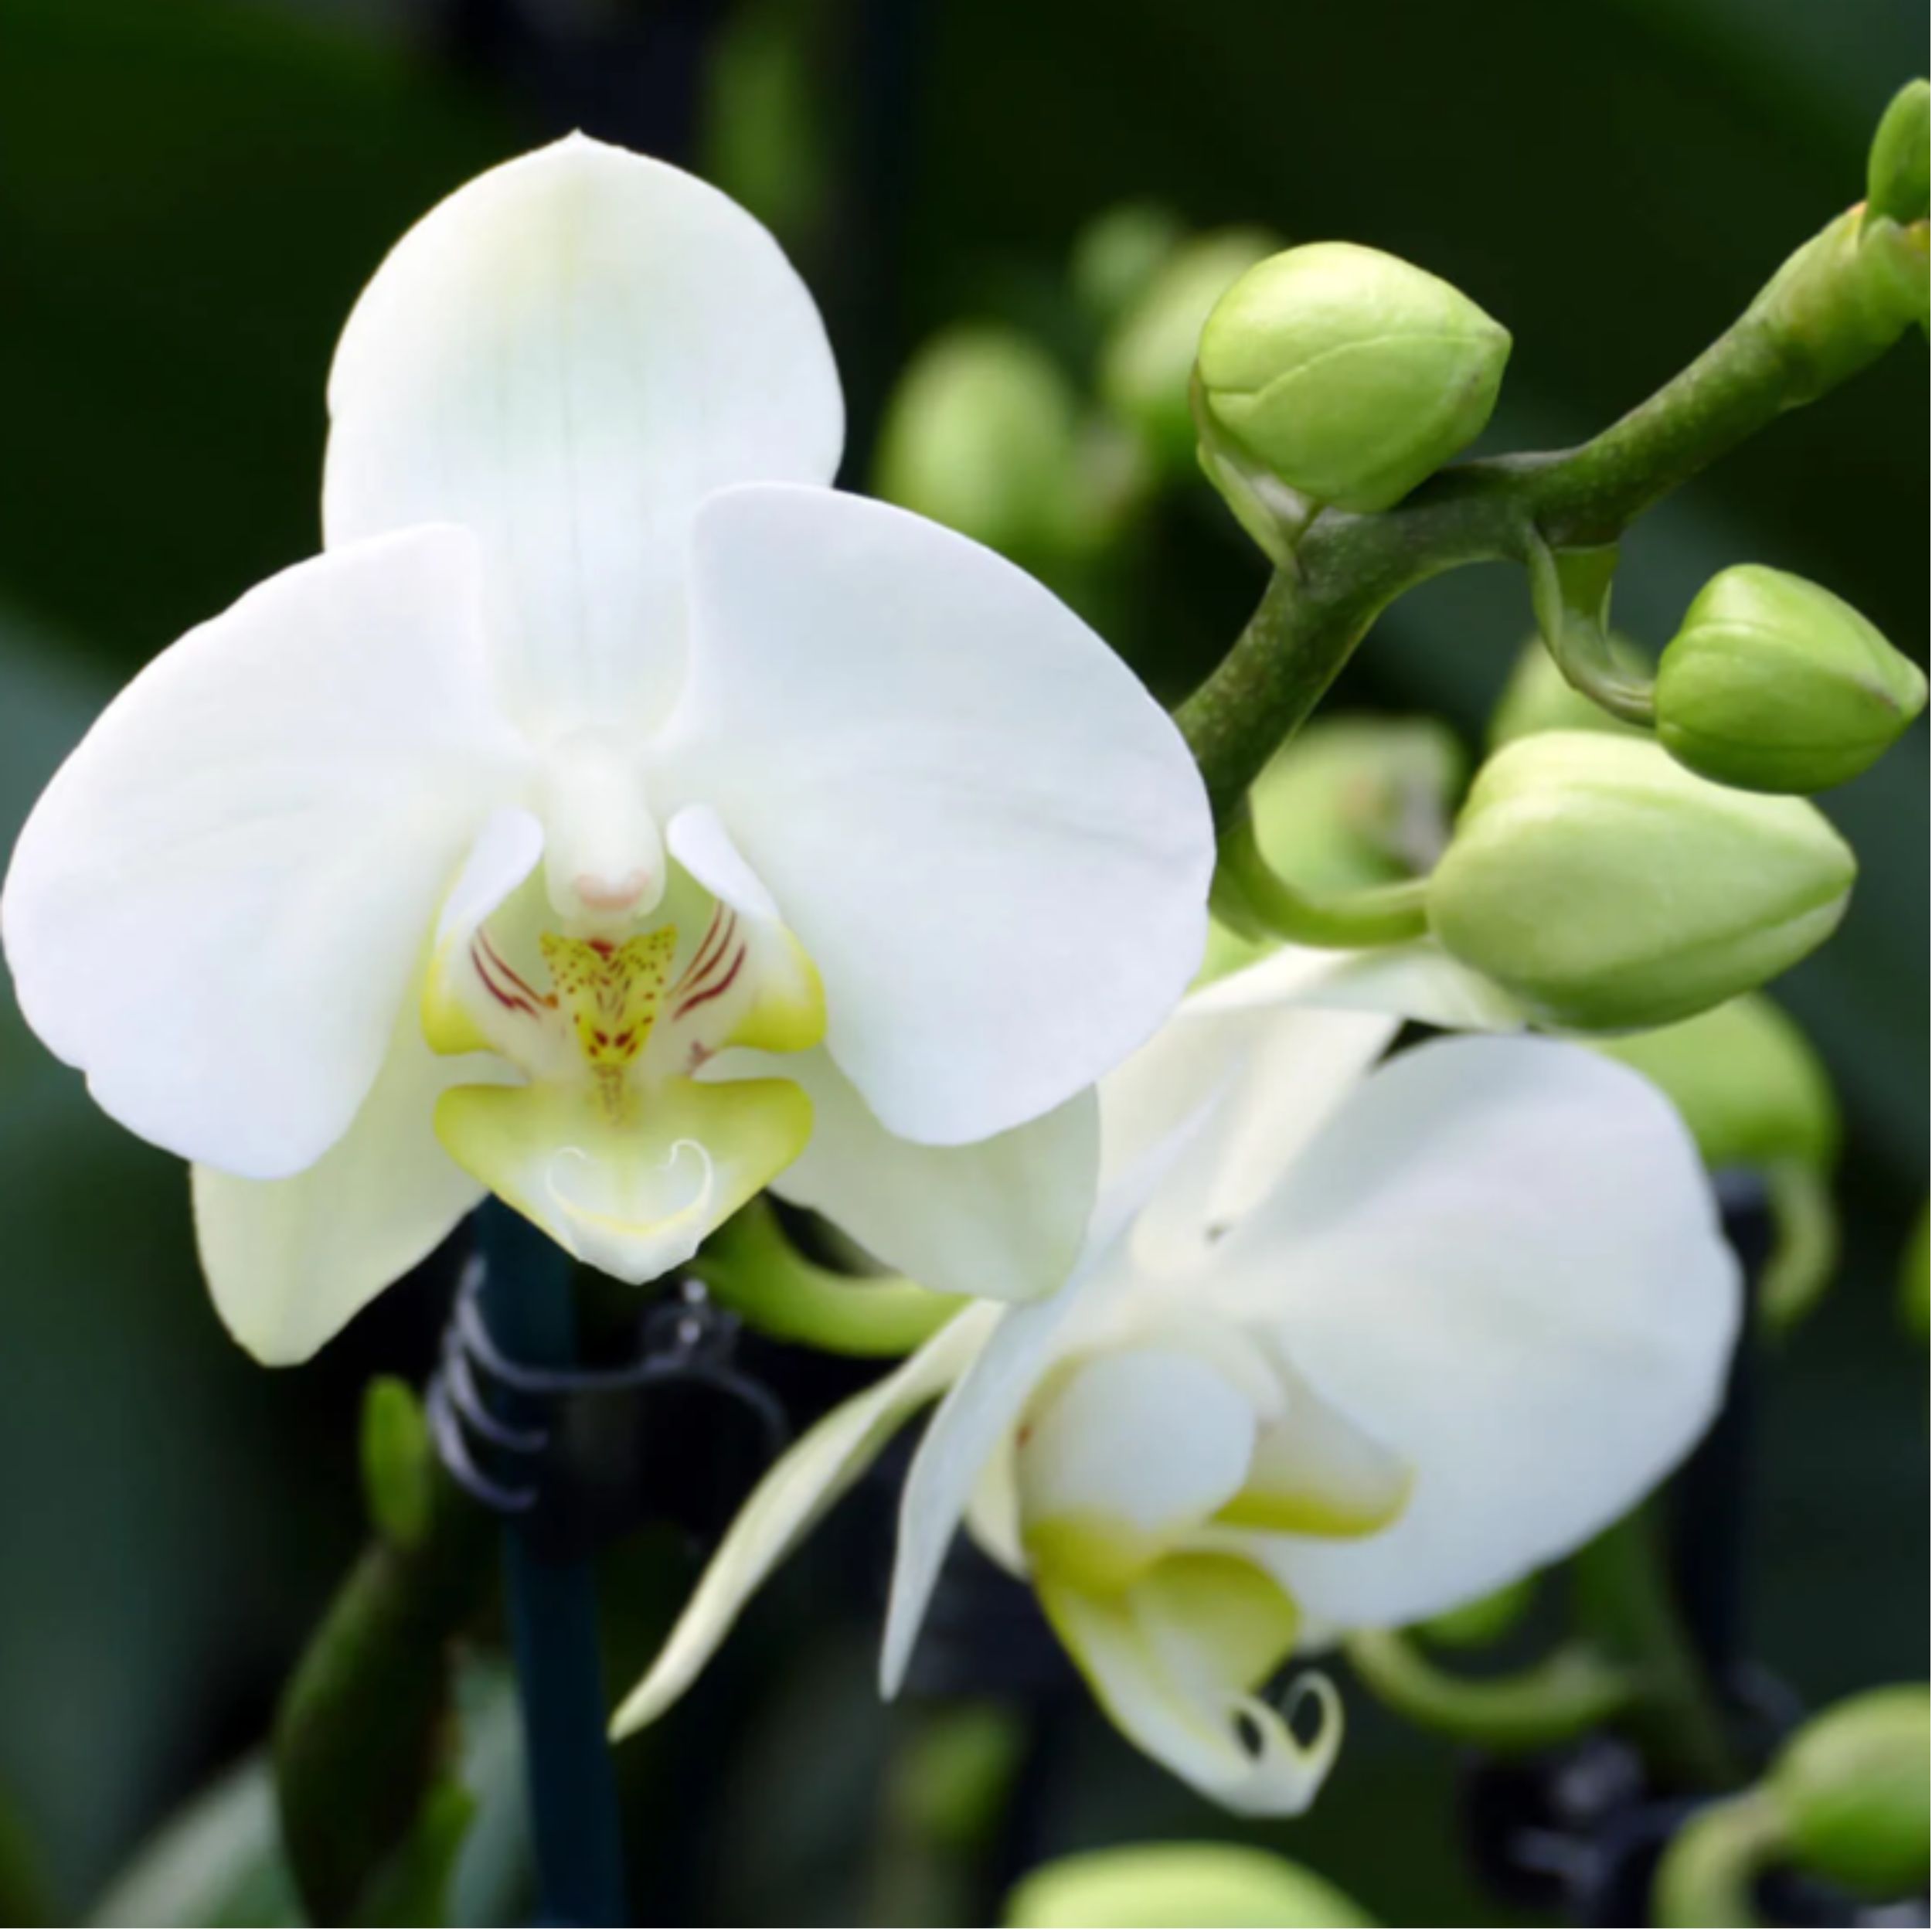 6-7 rispiges Orchideen 2er Paket + Übertopf weiß